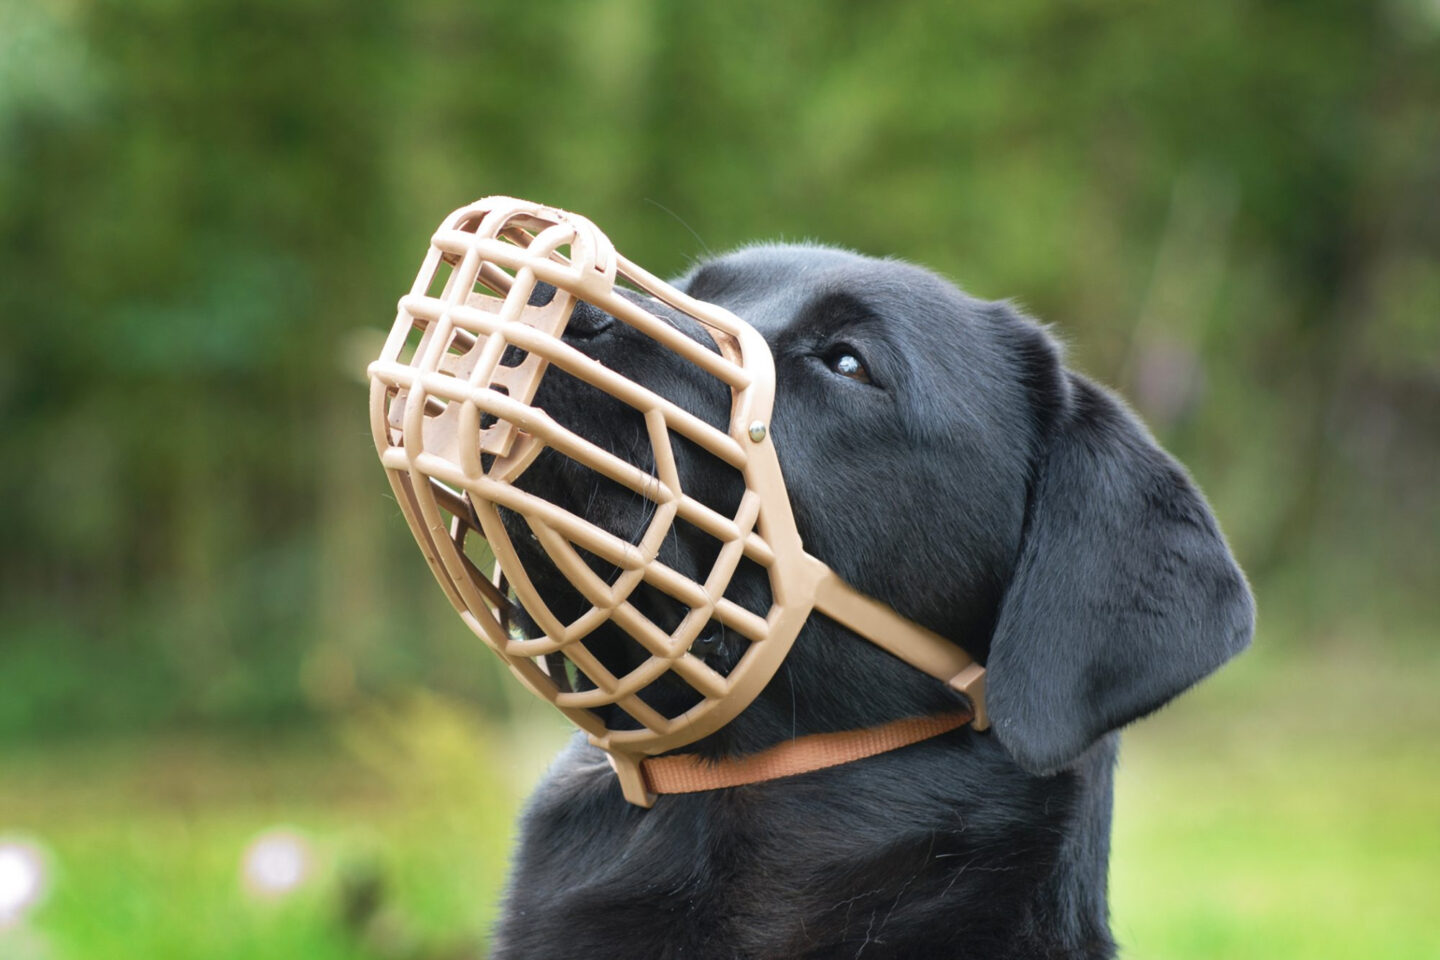 image 1 - Виды намордников для собак  как выбрать и использовать намордник для контроля и тренировки поведения собаки